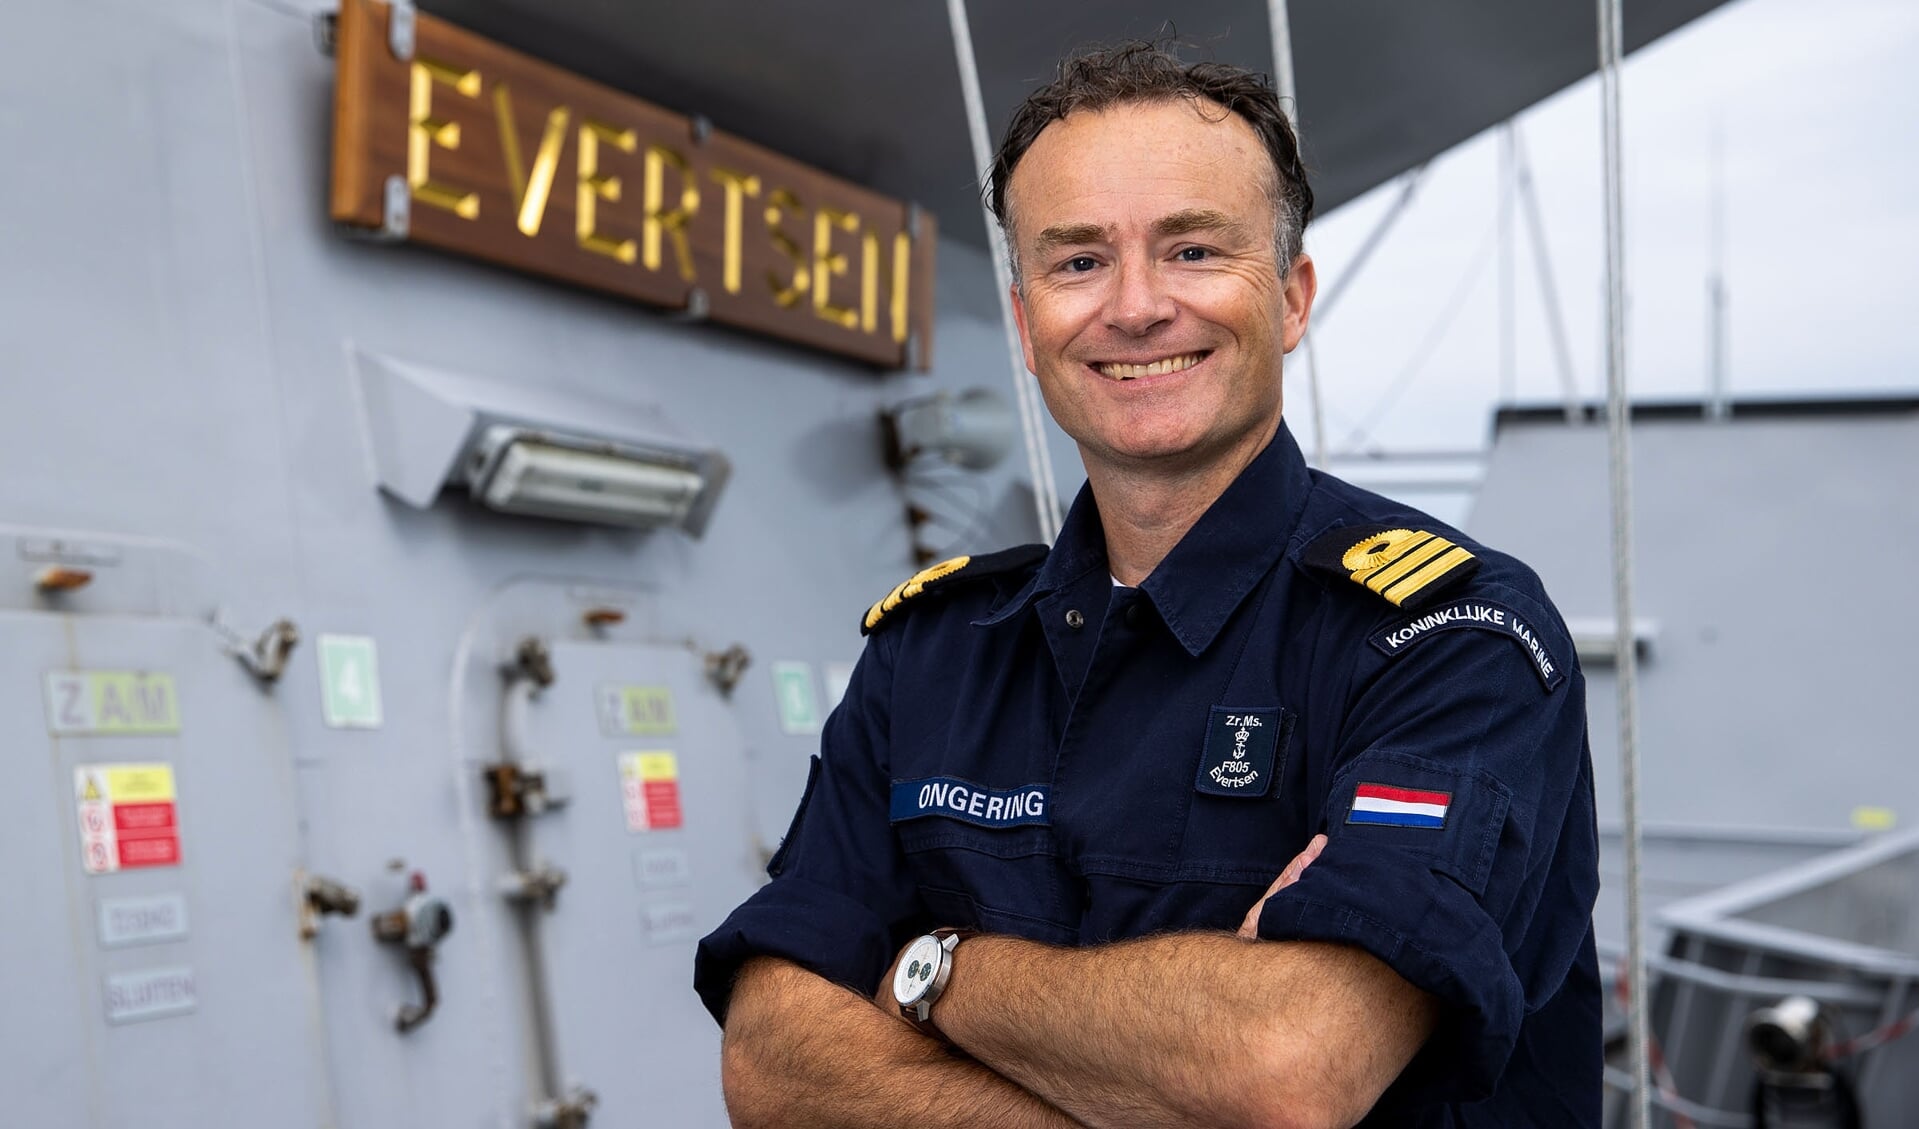 Kapitein-luitenant ter zee Rick Ongering is commandant van Zr.Ms. Evertsen, momenteel in de Filipijnse Zee.